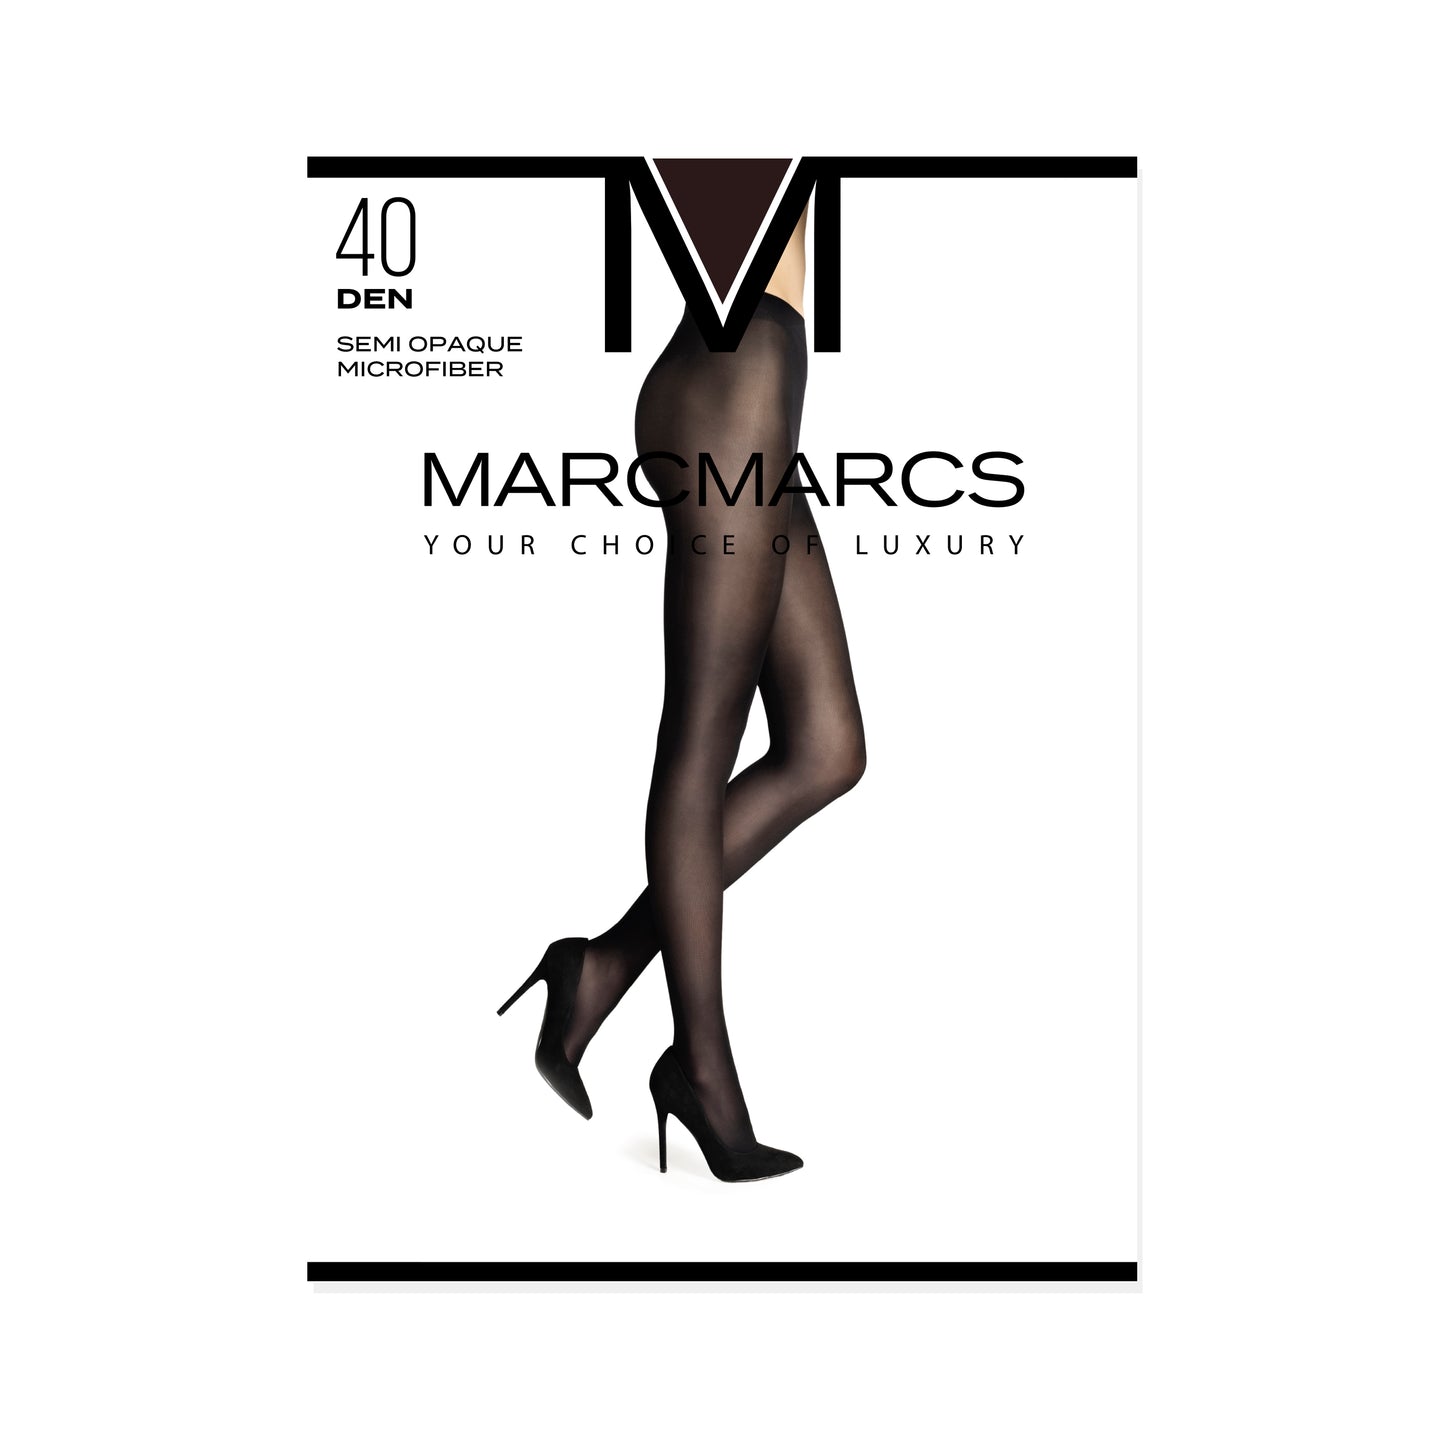 Marcmarcs panty`s 40 denier, semi opaque comfort.